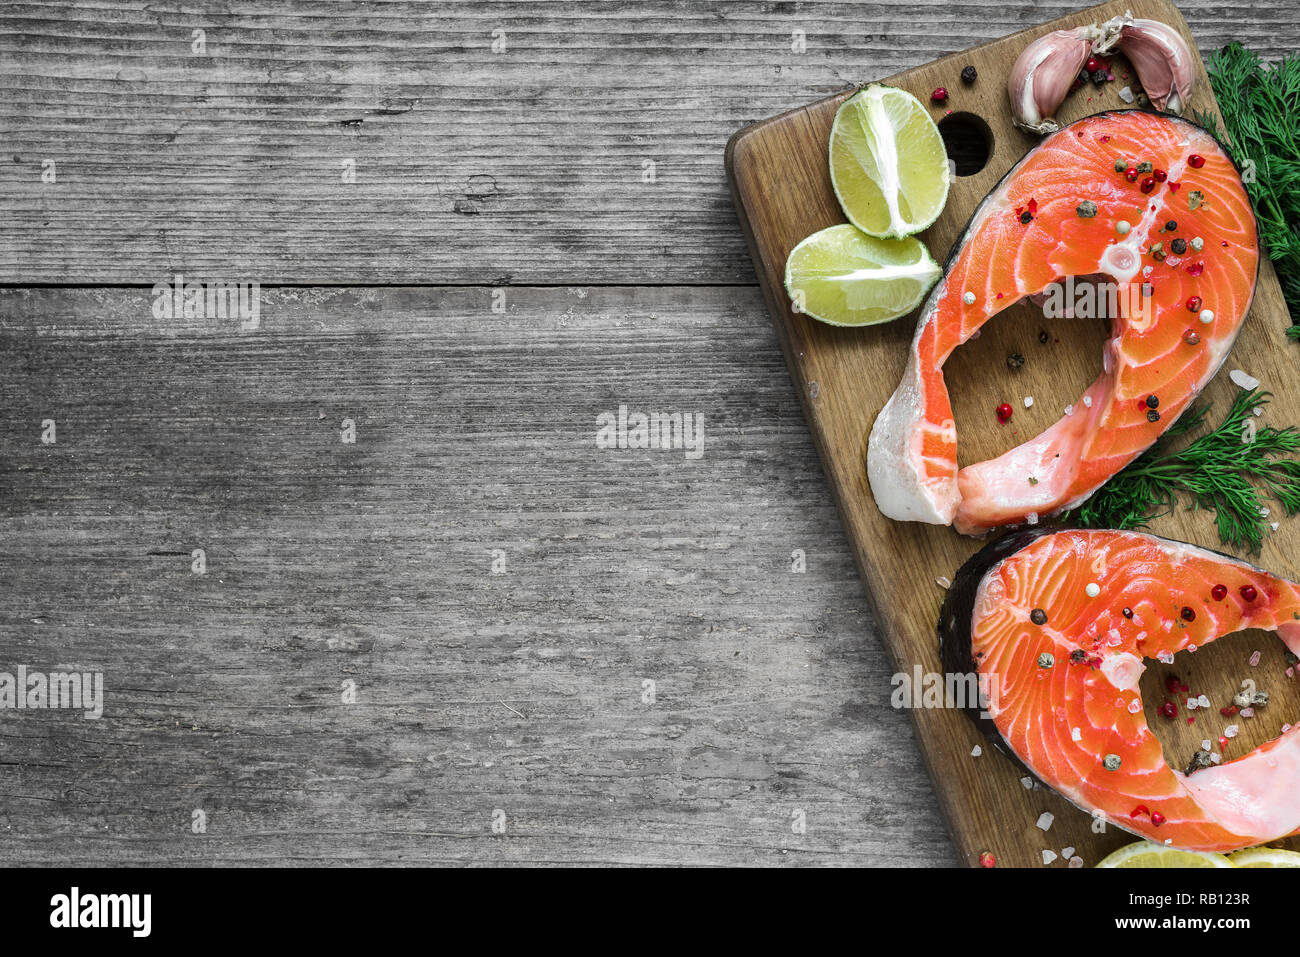 Raw bistecca di salmone con erbe aromatiche, limone e pepe sul tagliere di legno. sano e la dieta alimentare. vista superiore con spazio di copia Foto Stock